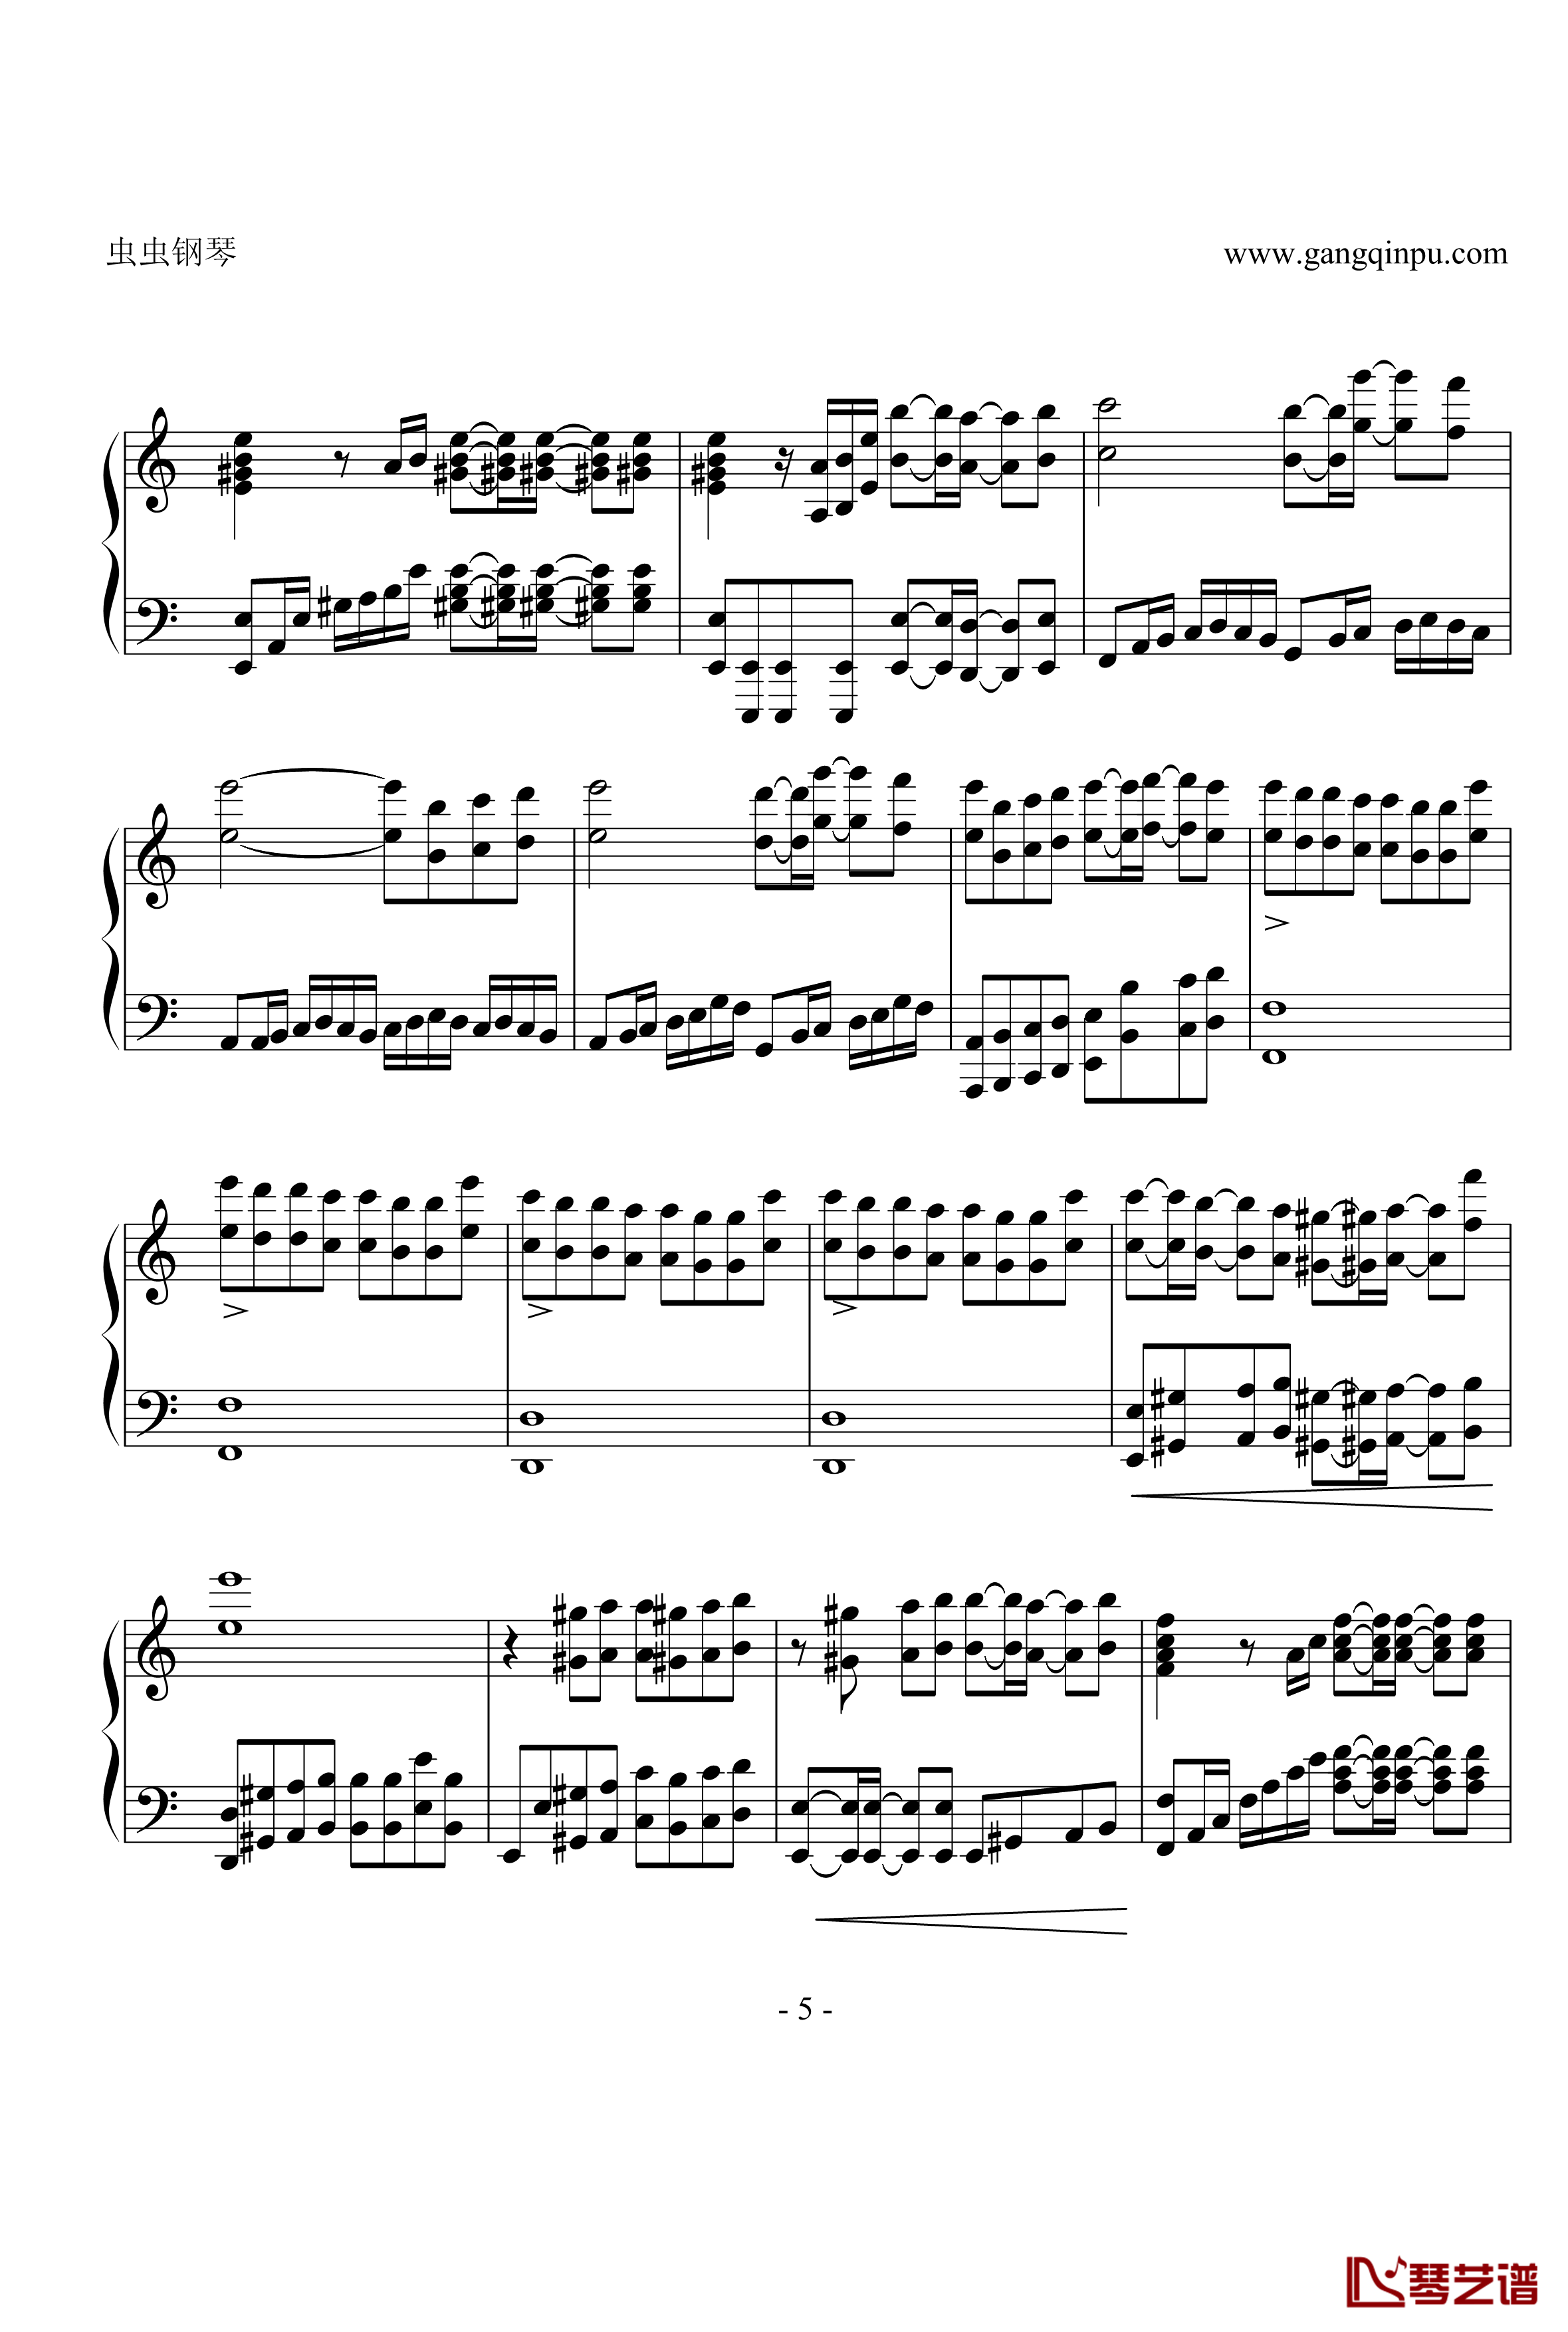 亡灵钢琴钢琴谱-修改版之再版-电锯惊魂5